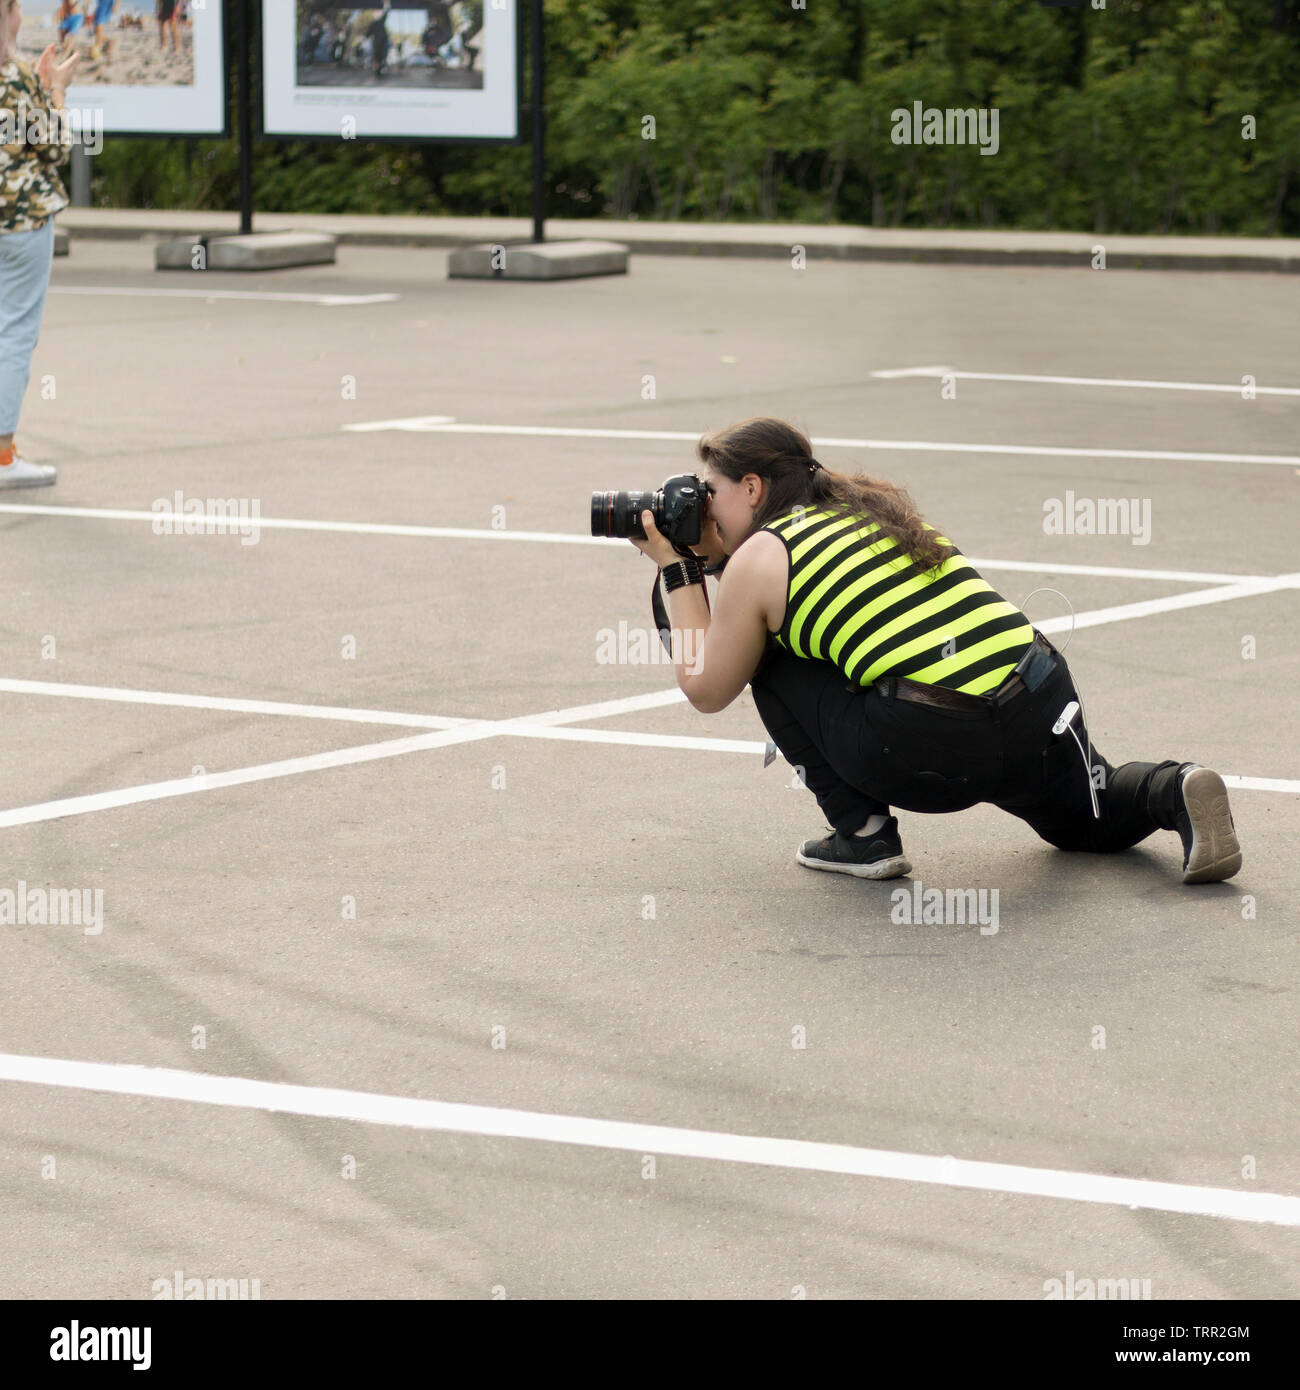 Une femme photographe avec appareil photo reflex numérique est secrètement prendre des photos de quelqu'un en exposition à l'extérieur. Moscou - 1er juin 2019. Photographiant cachés, pap Banque D'Images